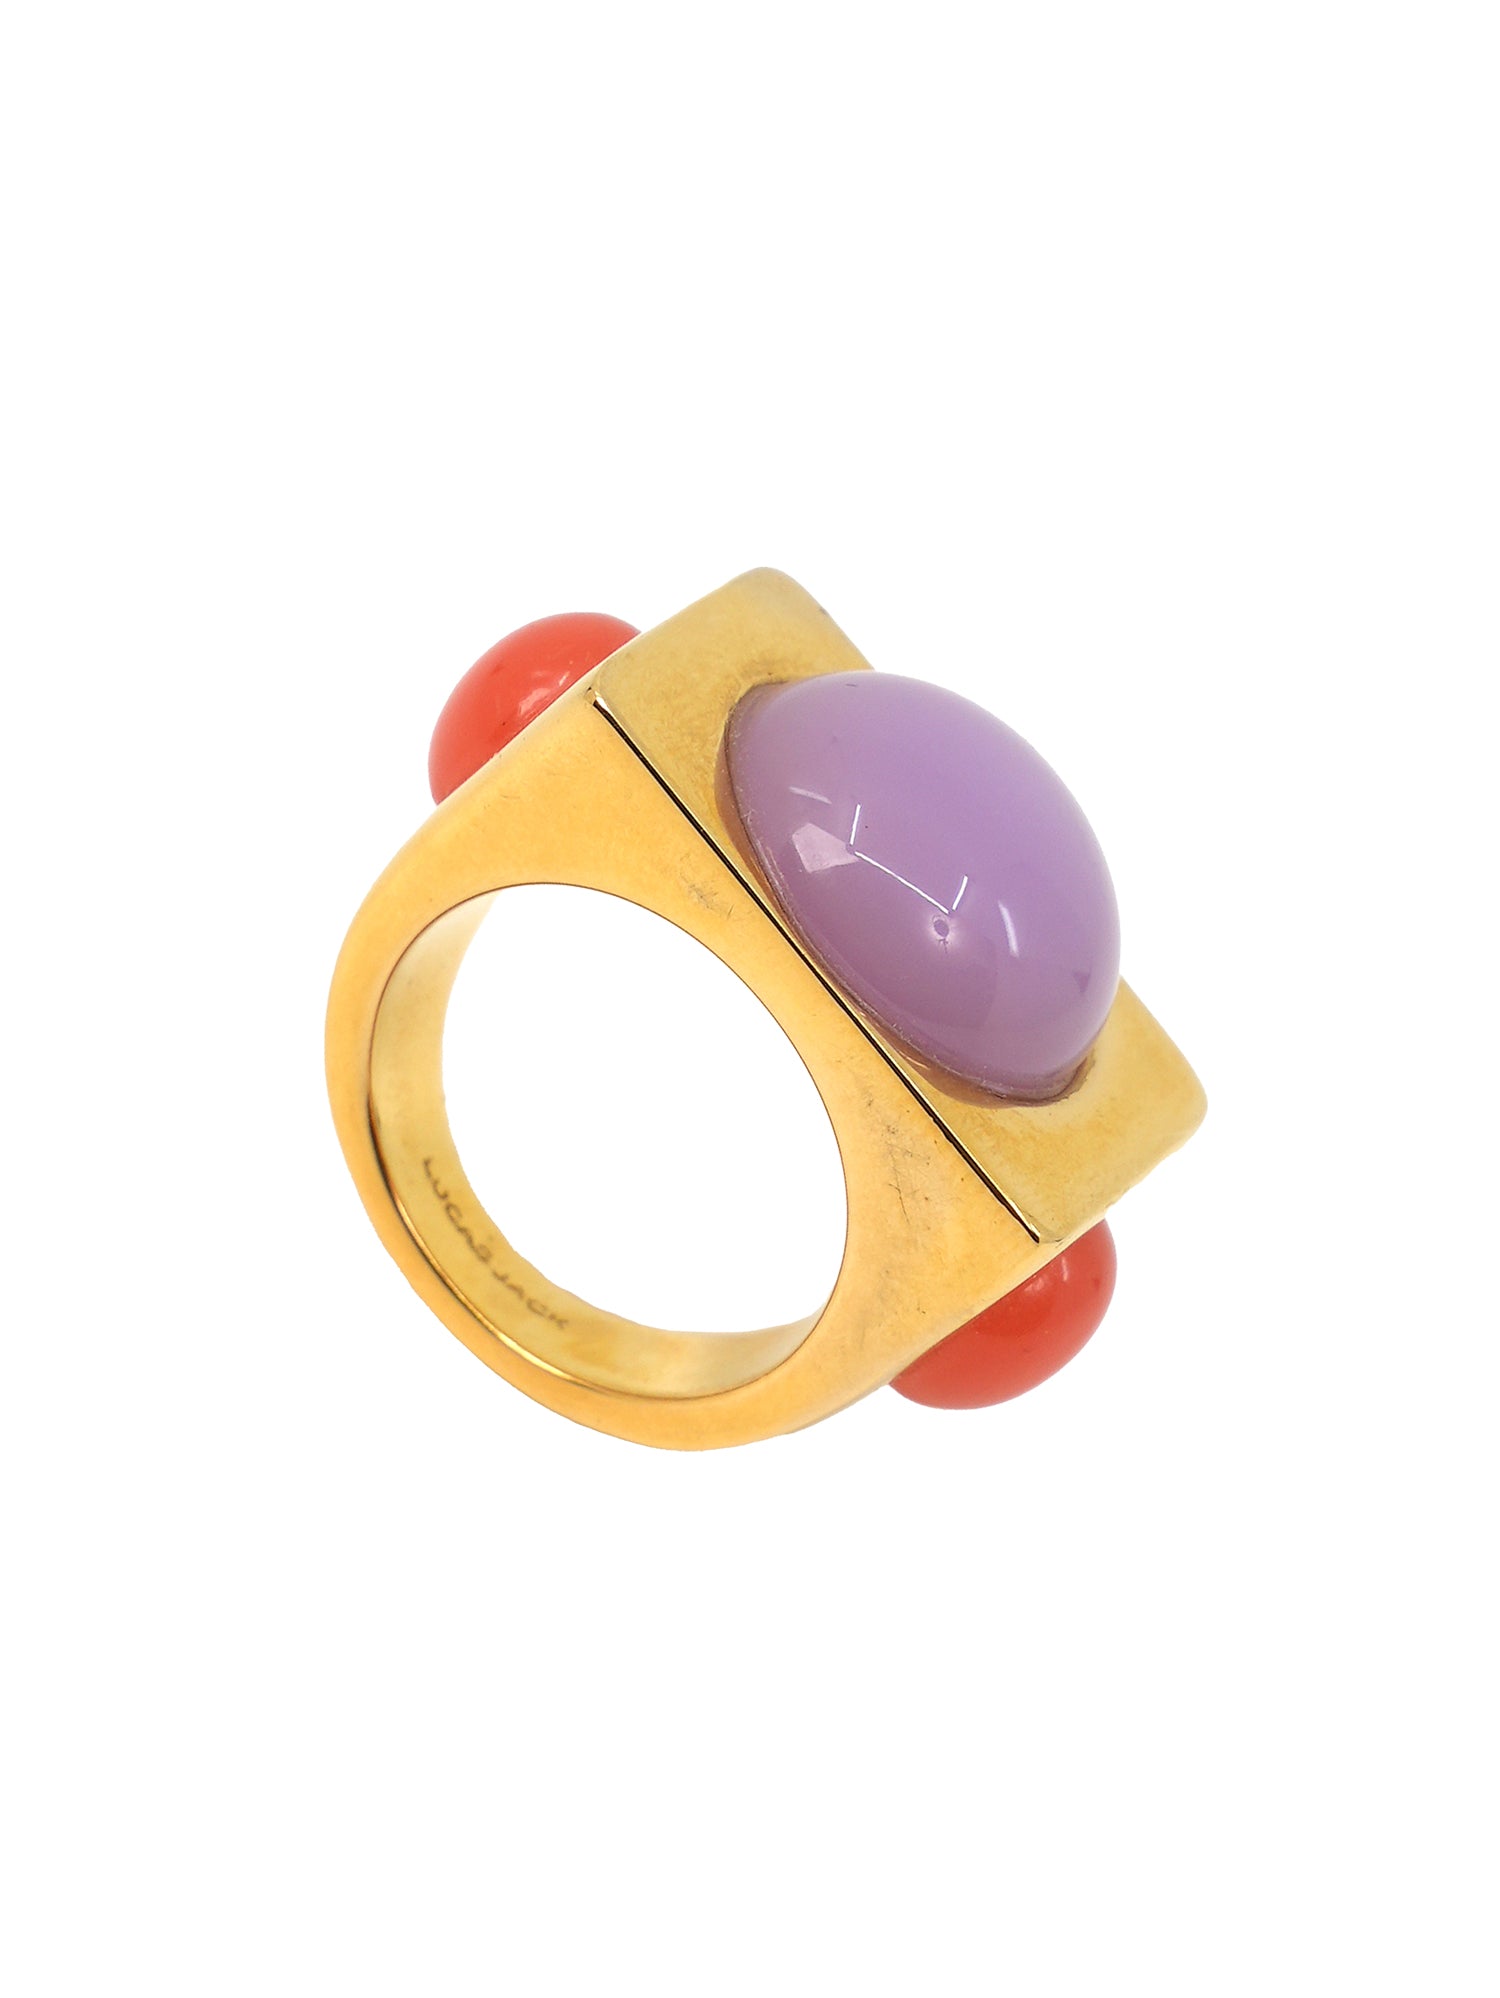 Rectangular Gold Ring - Resin Cabochons - Mulled Grape / Orange